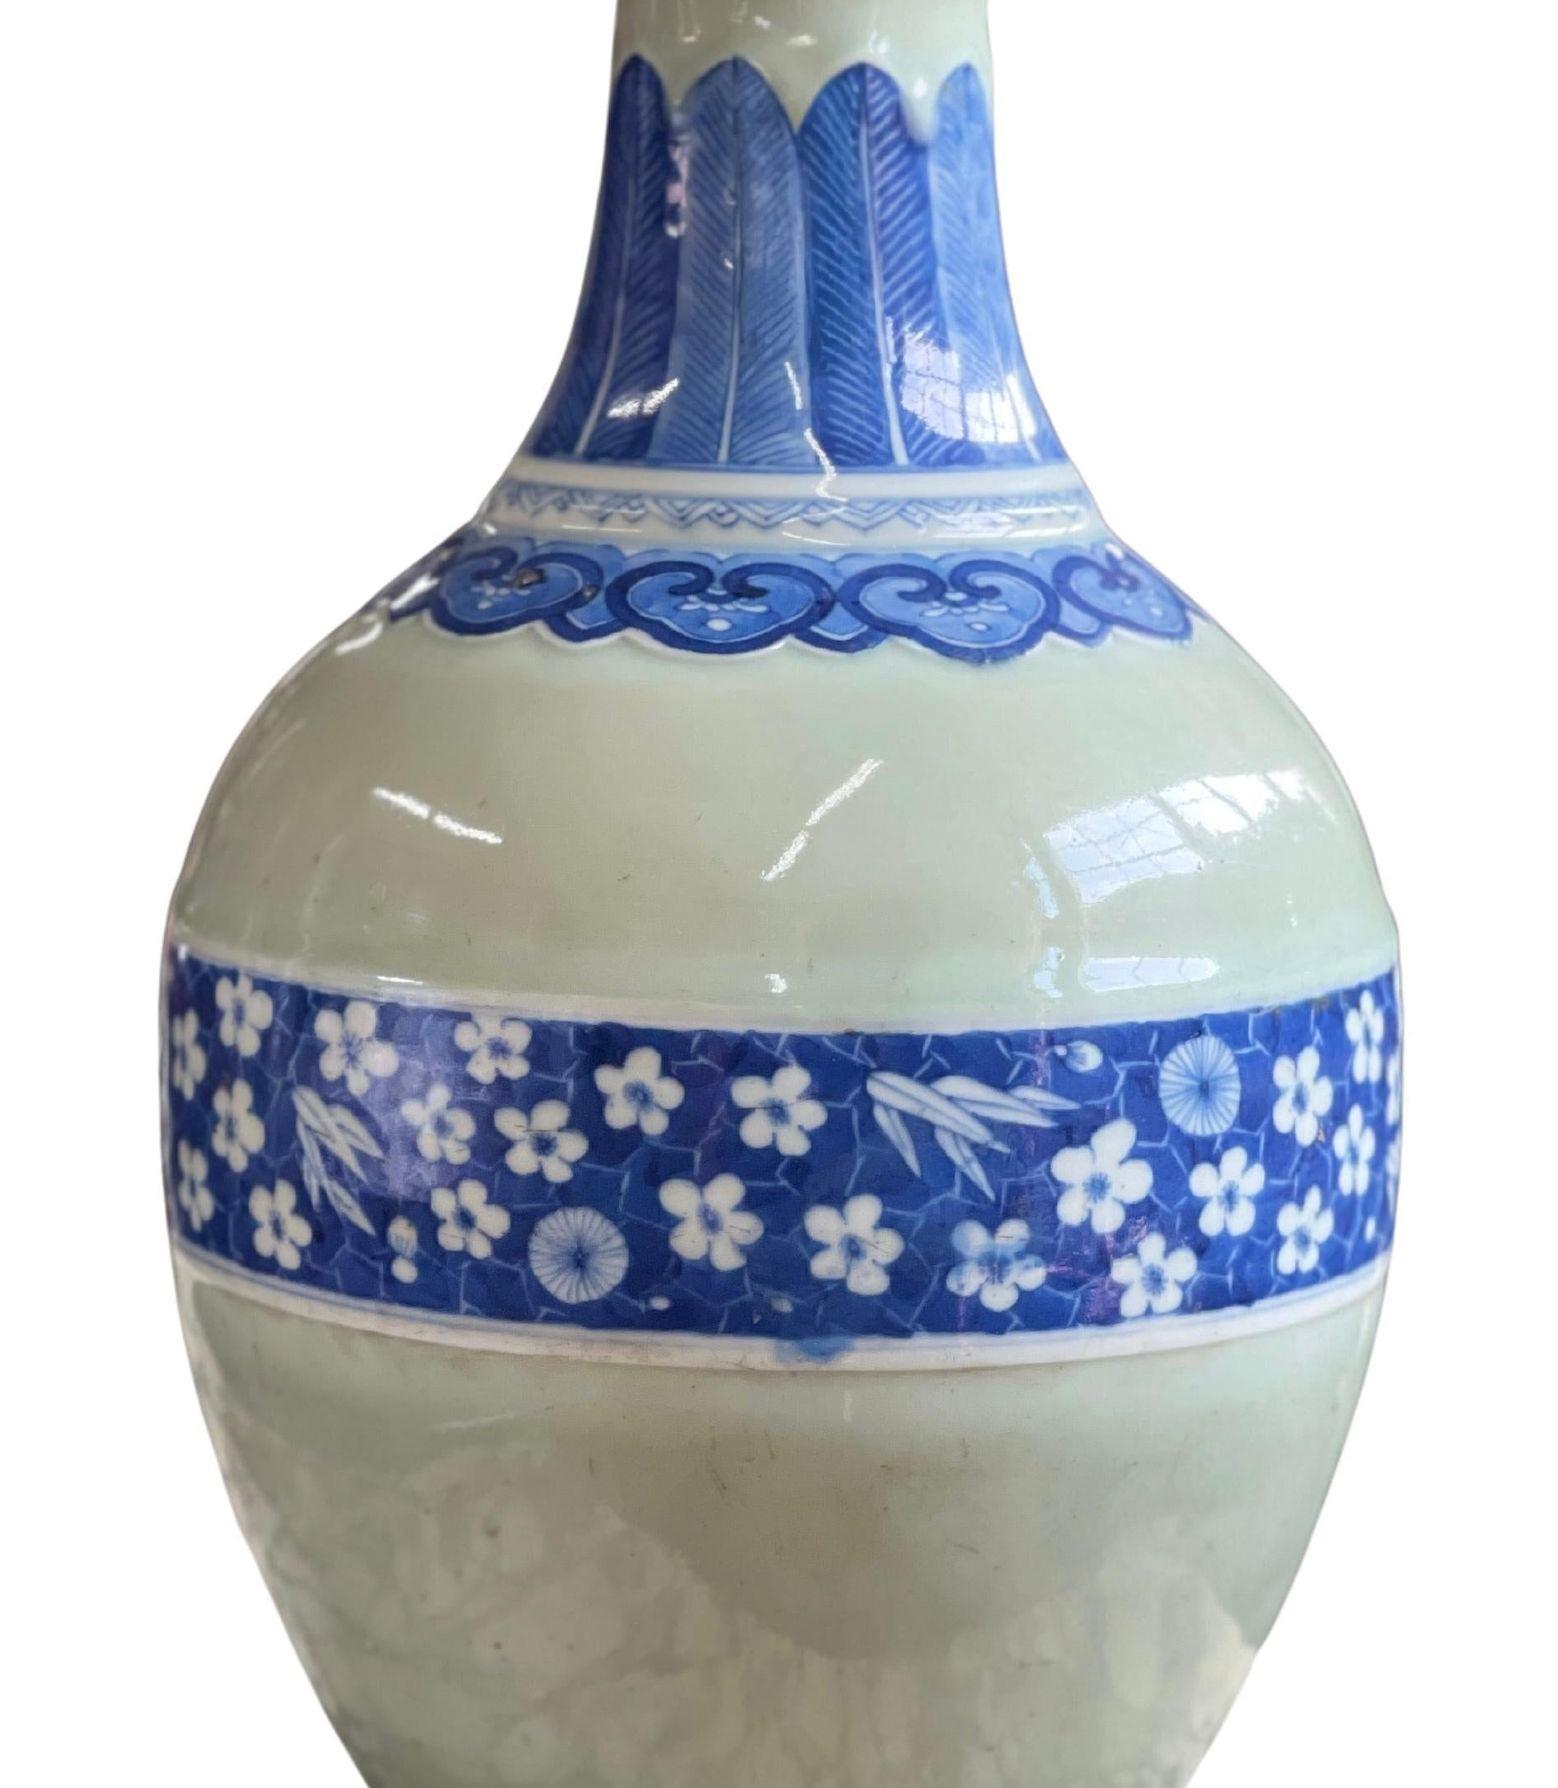 Traditionelle blau-weiße Vase aus chinesischem Porzellan, verziert mit Blumen und botanischen Illustrationen (18. Jahrhundert).